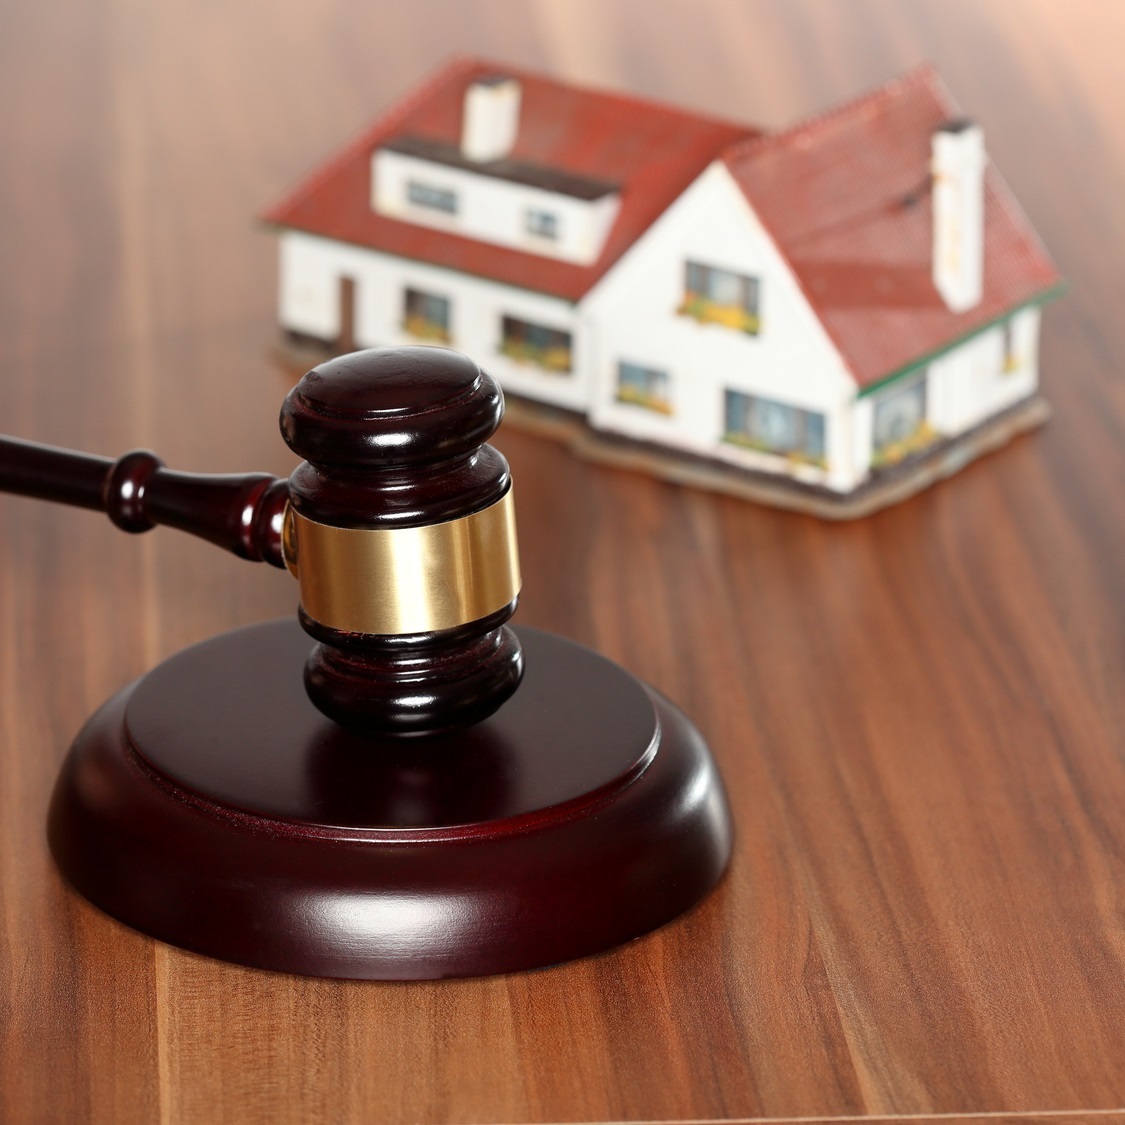 Наследство долгов по жкх. Юрист по жилищным вопросам. Адвокат жилищные споры. Защита прав на недвижимость.